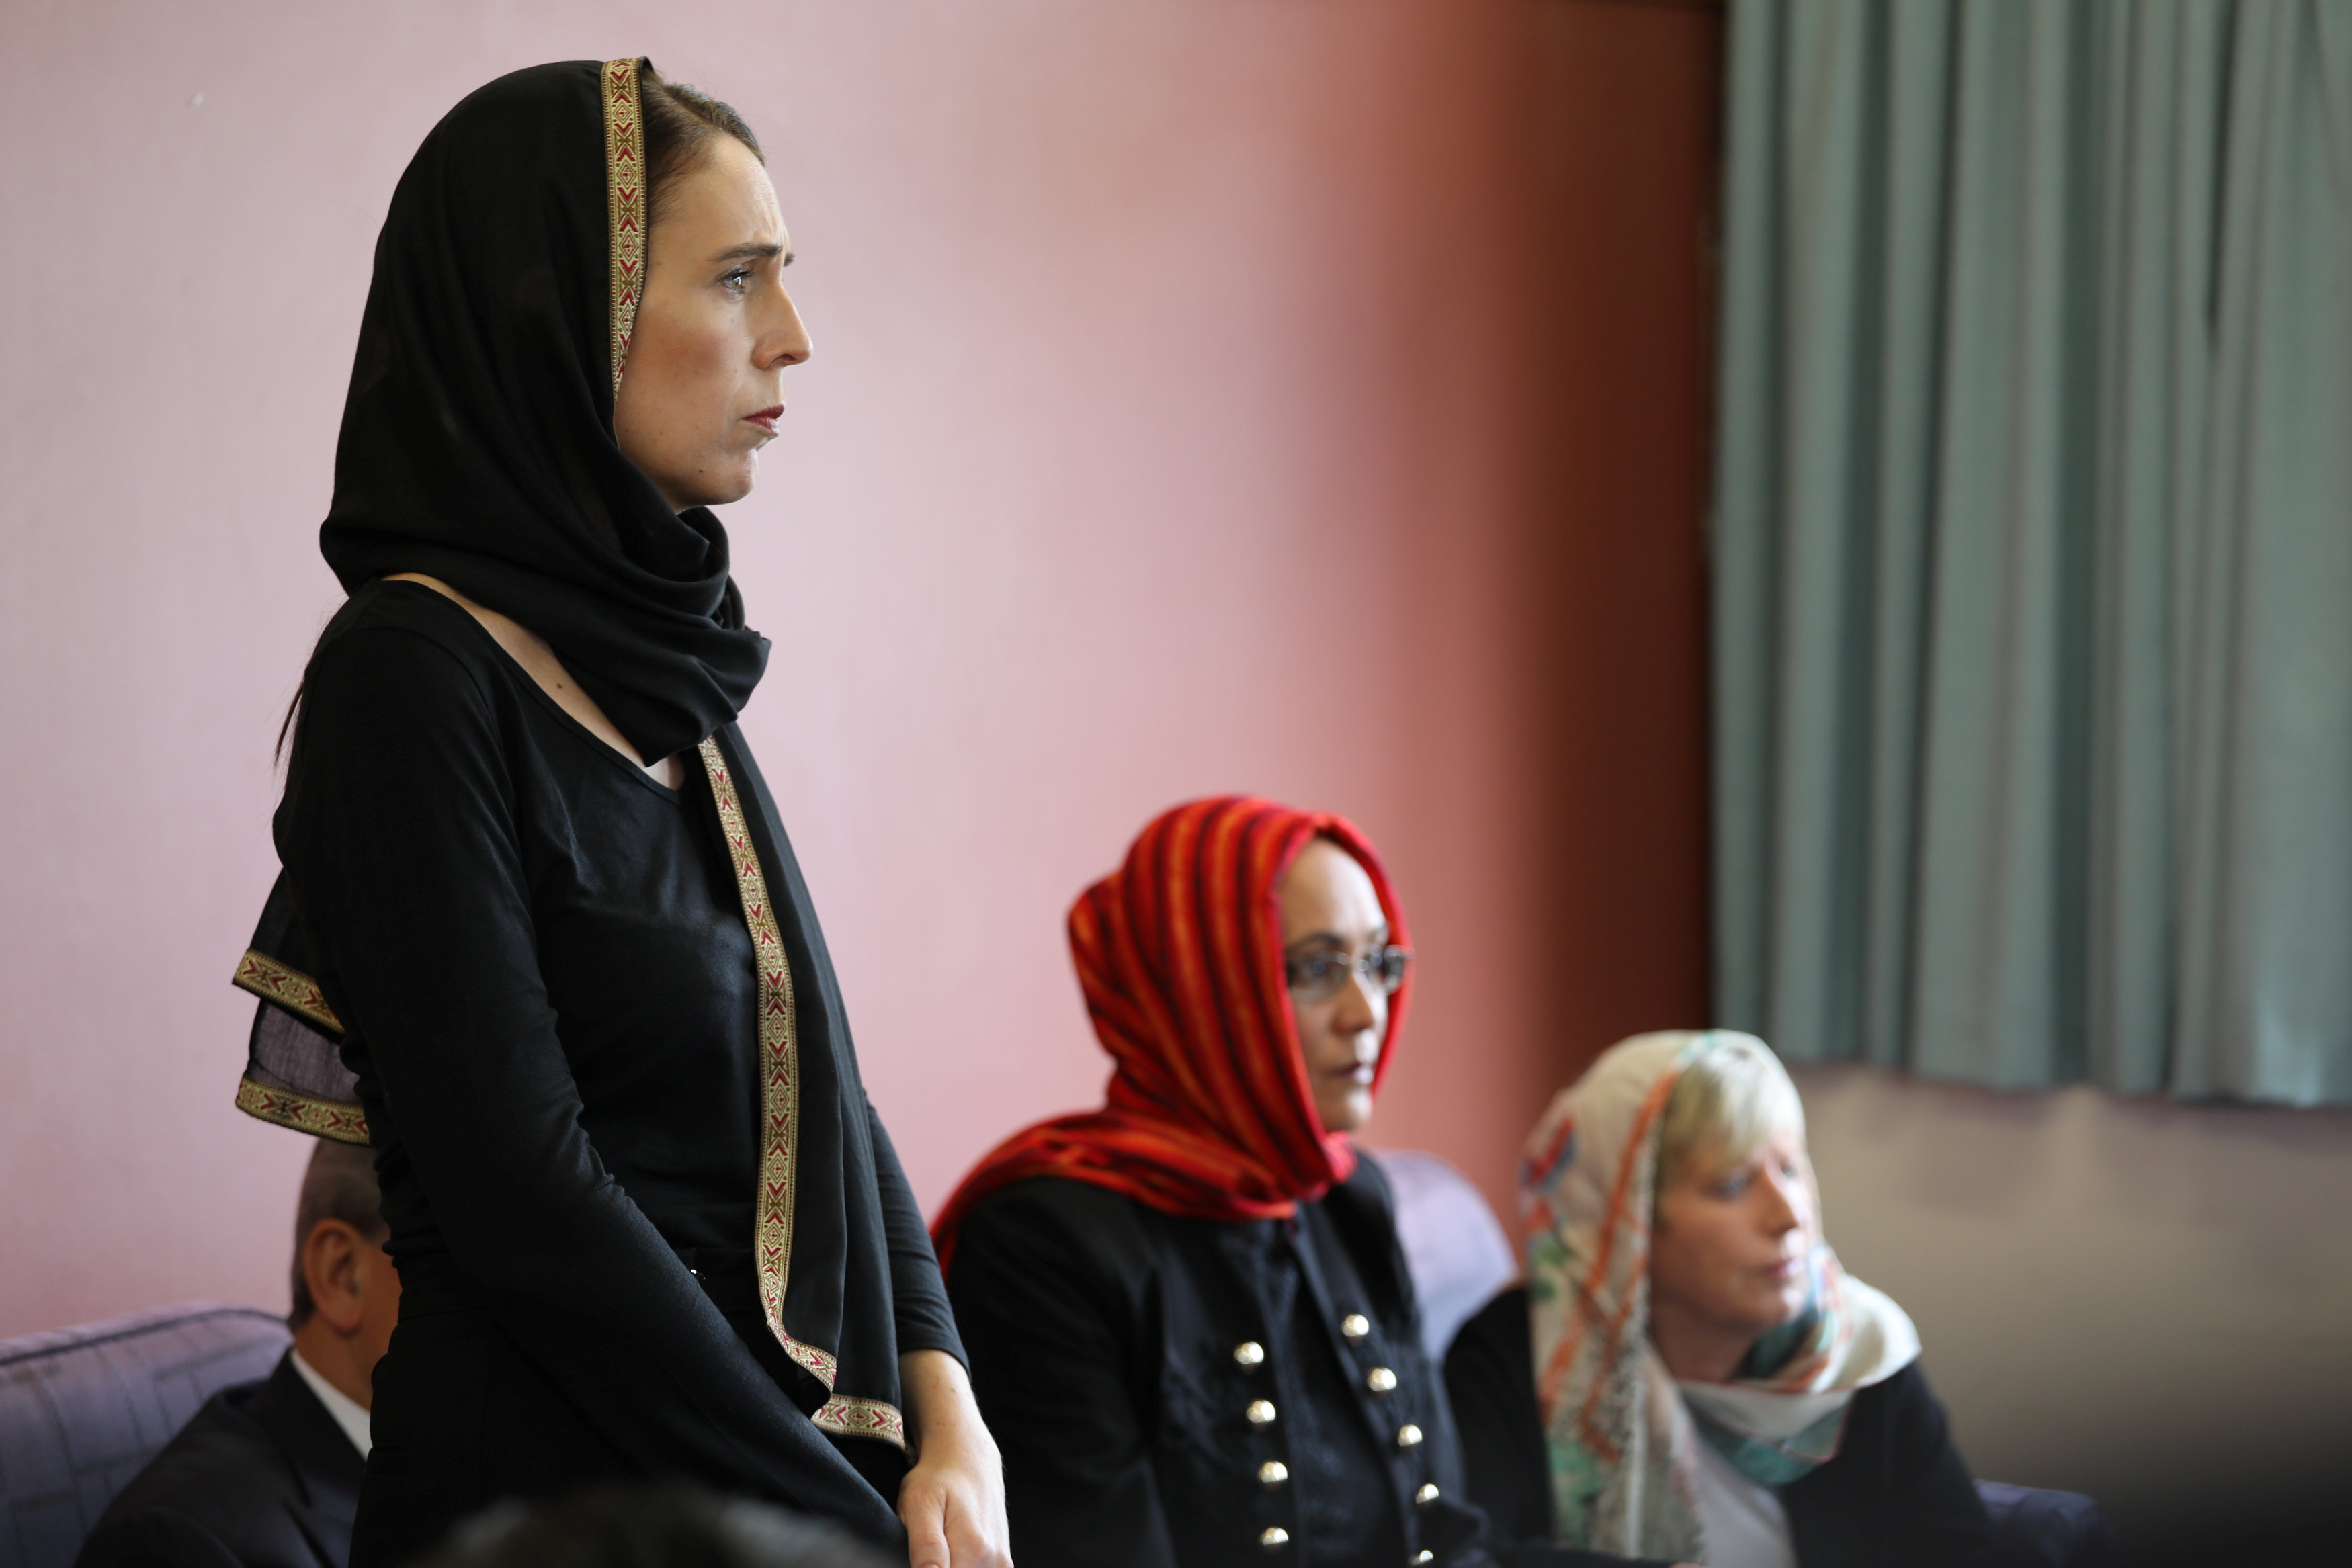 La Primera Ministra habla con representantes de la comunidad musulmana en el centro de refugiados de Canterbury en Christchurch, Nueva Zelanda, el 16 de marzo de 2019 (Oficina de la Primera Ministra de Nueva Zelanda / Hoja informativa a través de REUTERS)